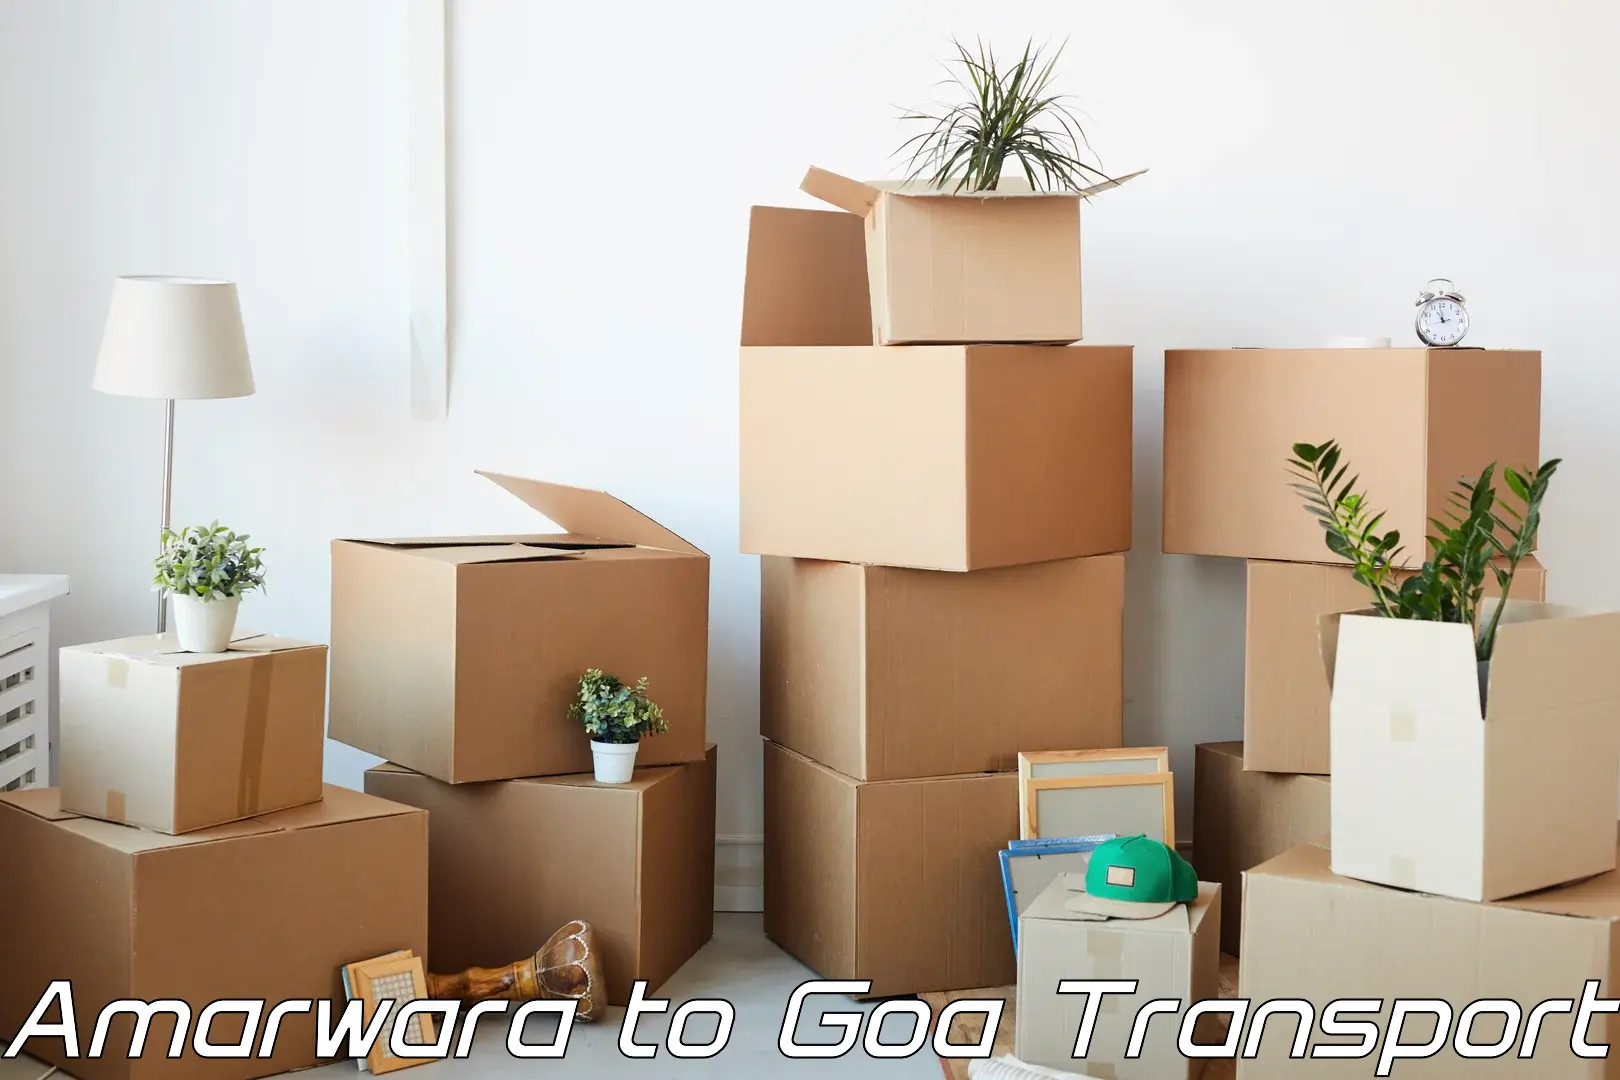 Transport in sharing Amarwara to Goa